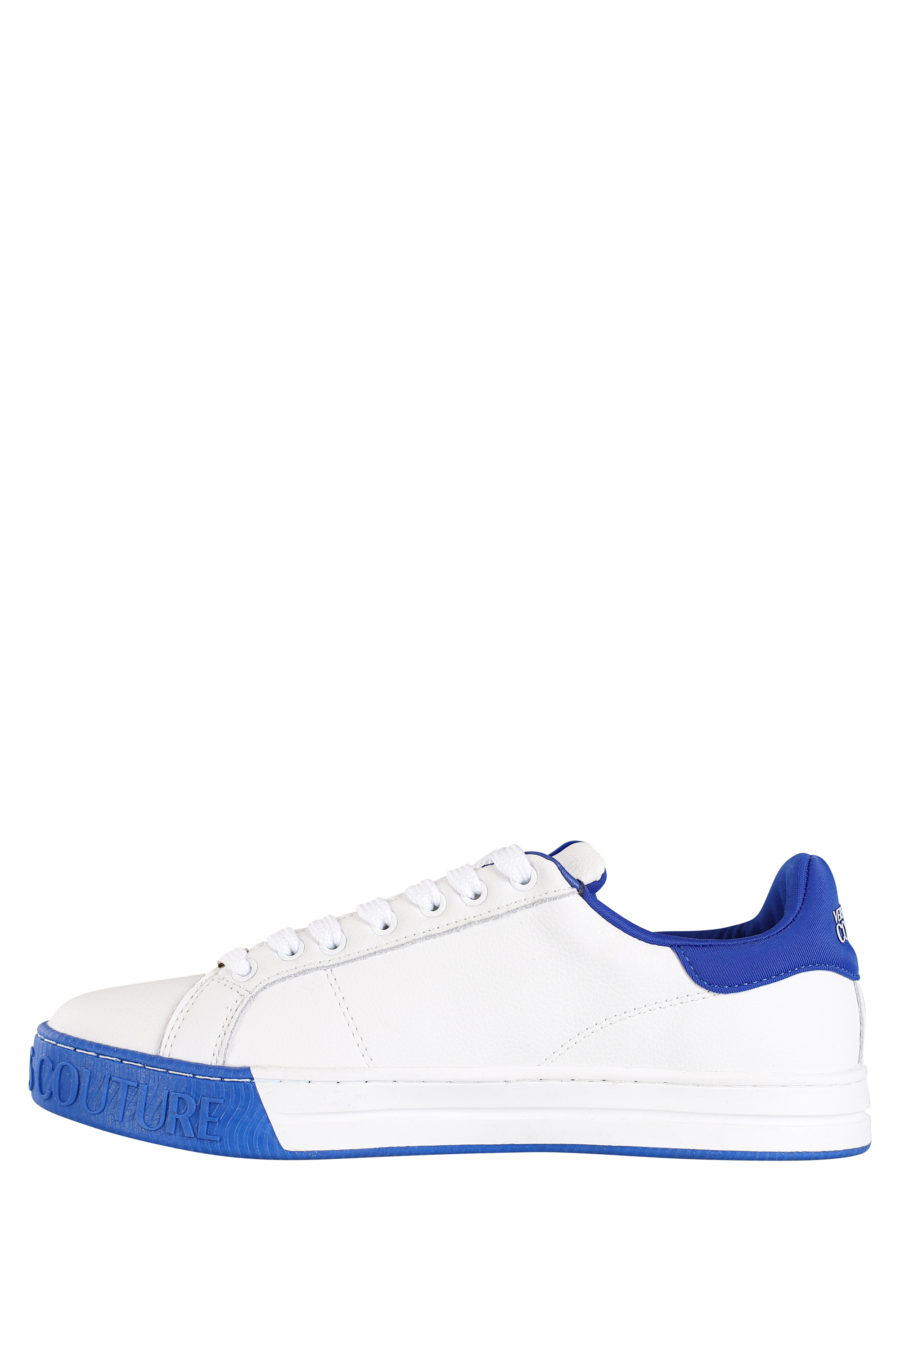 Zapatillas blancas con detalles azul - IMG 9803